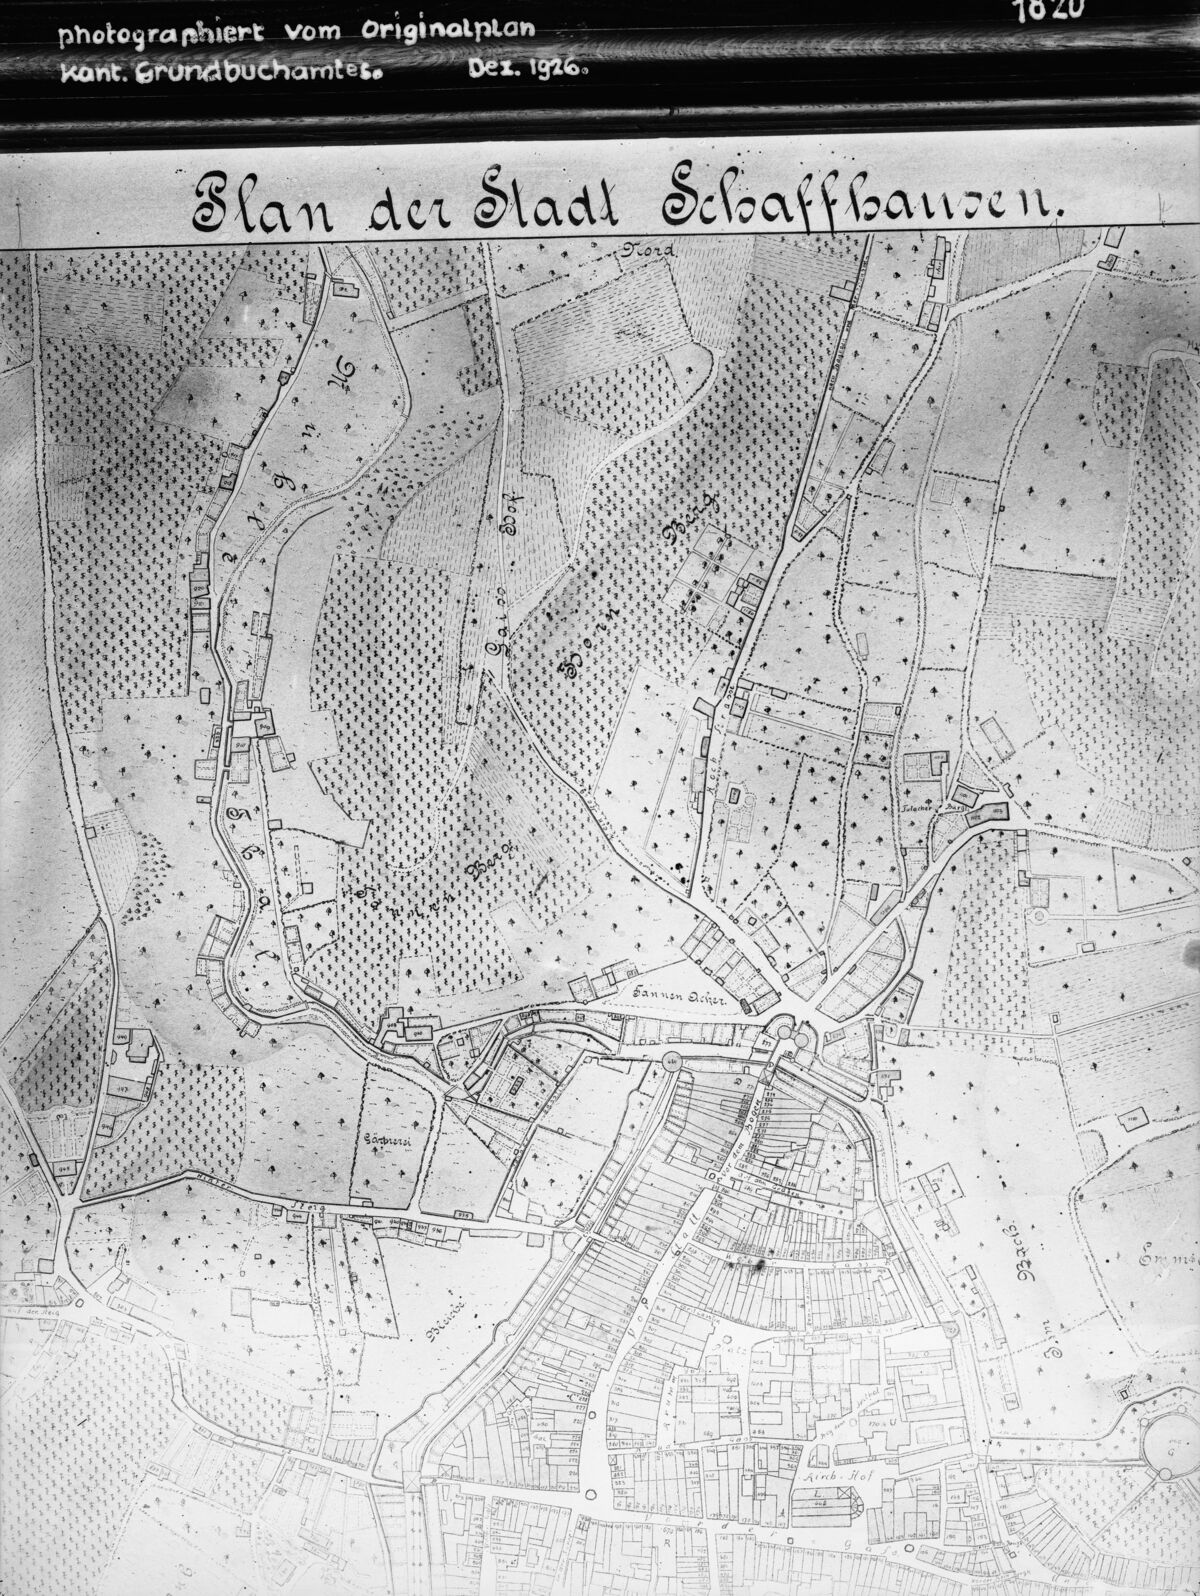 GFA 16/3269: Reproduktion eines Planes der Stadt Schaffhausen 1820